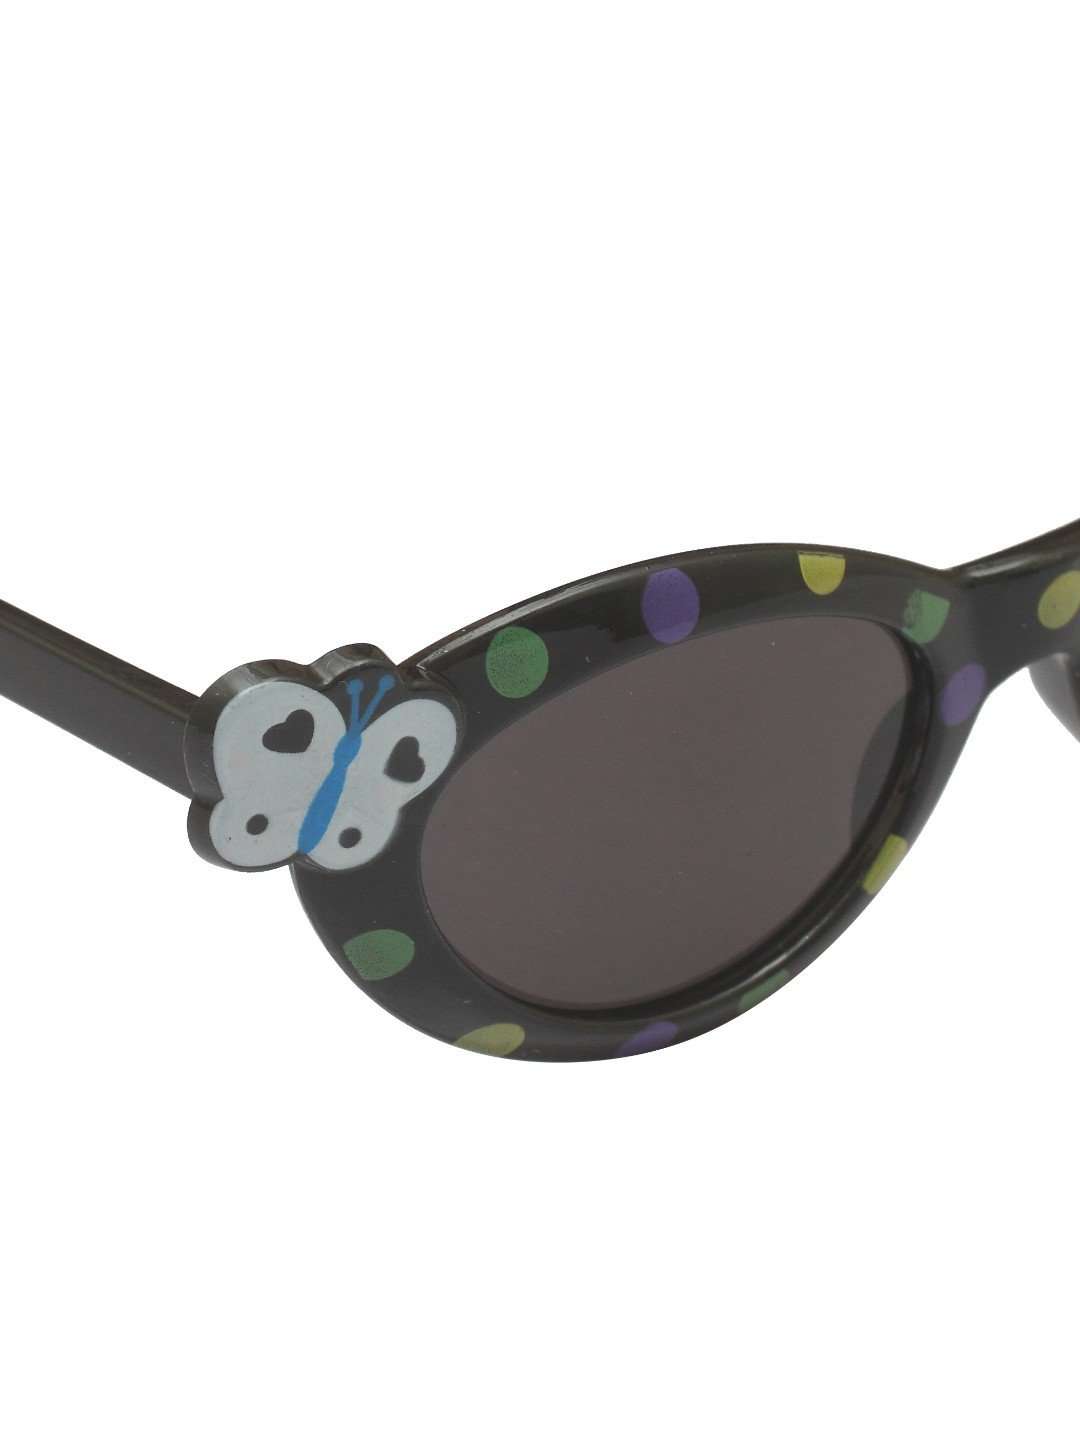 Stol'n Kids Black Butterfly Cat Eye Sunglasses - SWHF